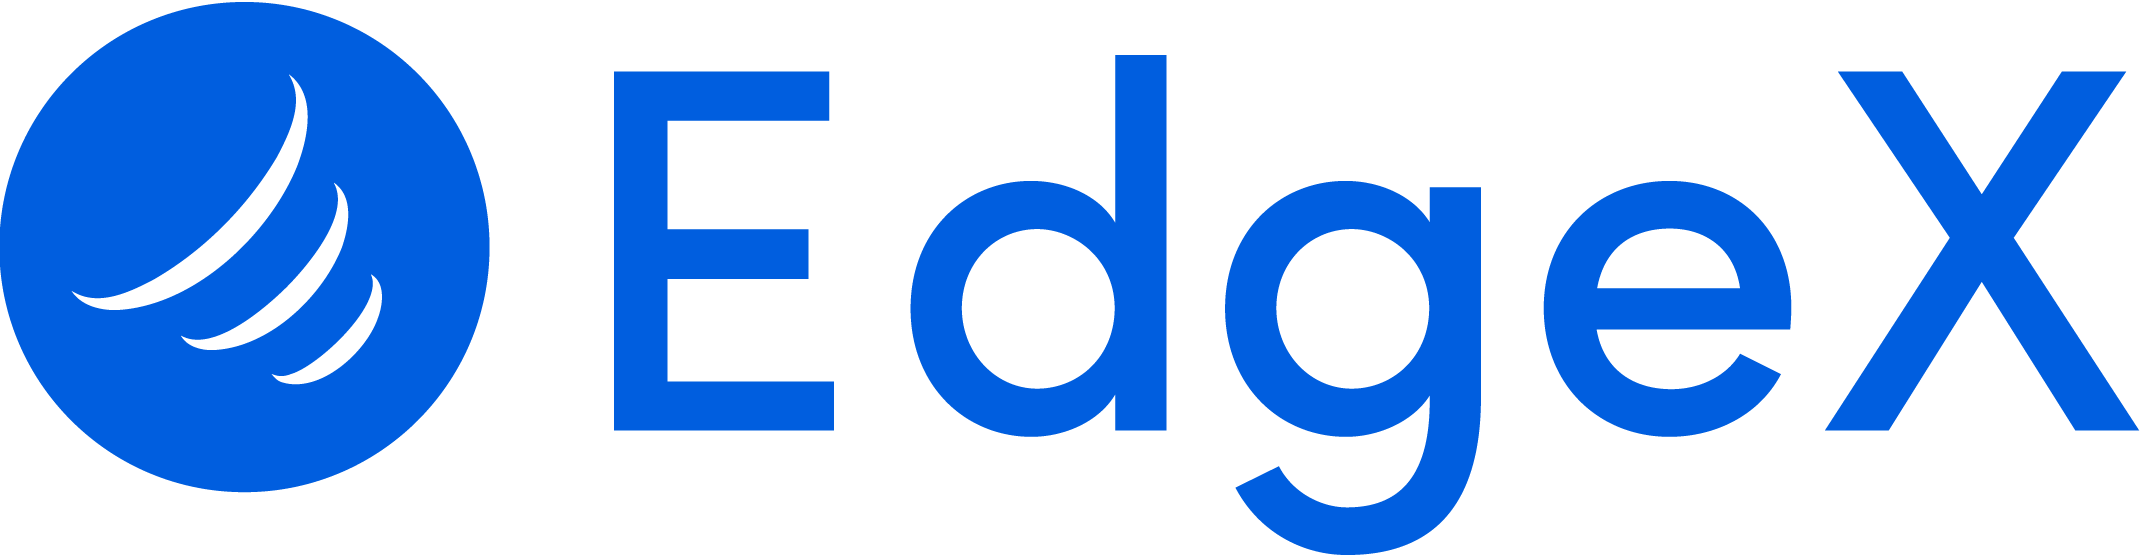 Edgex